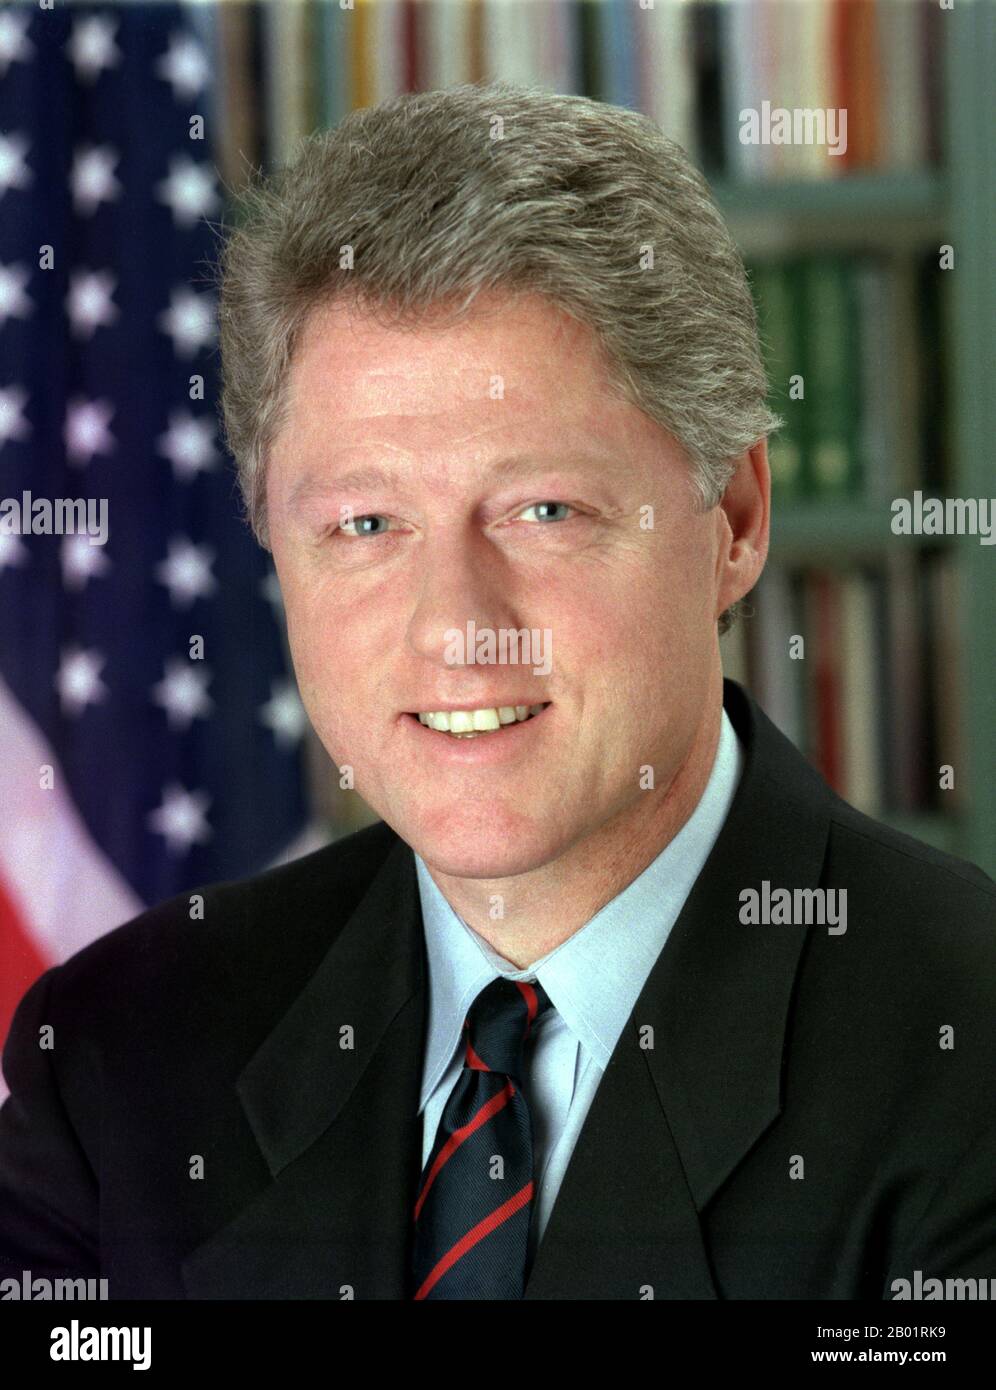 USA: William 'Bill' Clinton (19 agosto 1946 -), 42° Presidente degli Stati Uniti (r. 1993-2001). Ritratto ufficiale di Bob McNeely, 1 gennaio 1993. William Jefferson Clinton (nato William Jefferson Blythe III) è un politico statunitense, 42° Presidente degli Stati Uniti d'America dal 1993 al 2001. Inaugurato all'età di 46 anni, è stato il terzo presidente più giovane. Entrò in carica alla fine della Guerra fredda e fu il primo presidente della generazione dei baby boomer. Clinton è stato descritto come un nuovo democratico. Molte delle sue politiche sono state attribuite a una filosofia centrista della terza via. Foto Stock